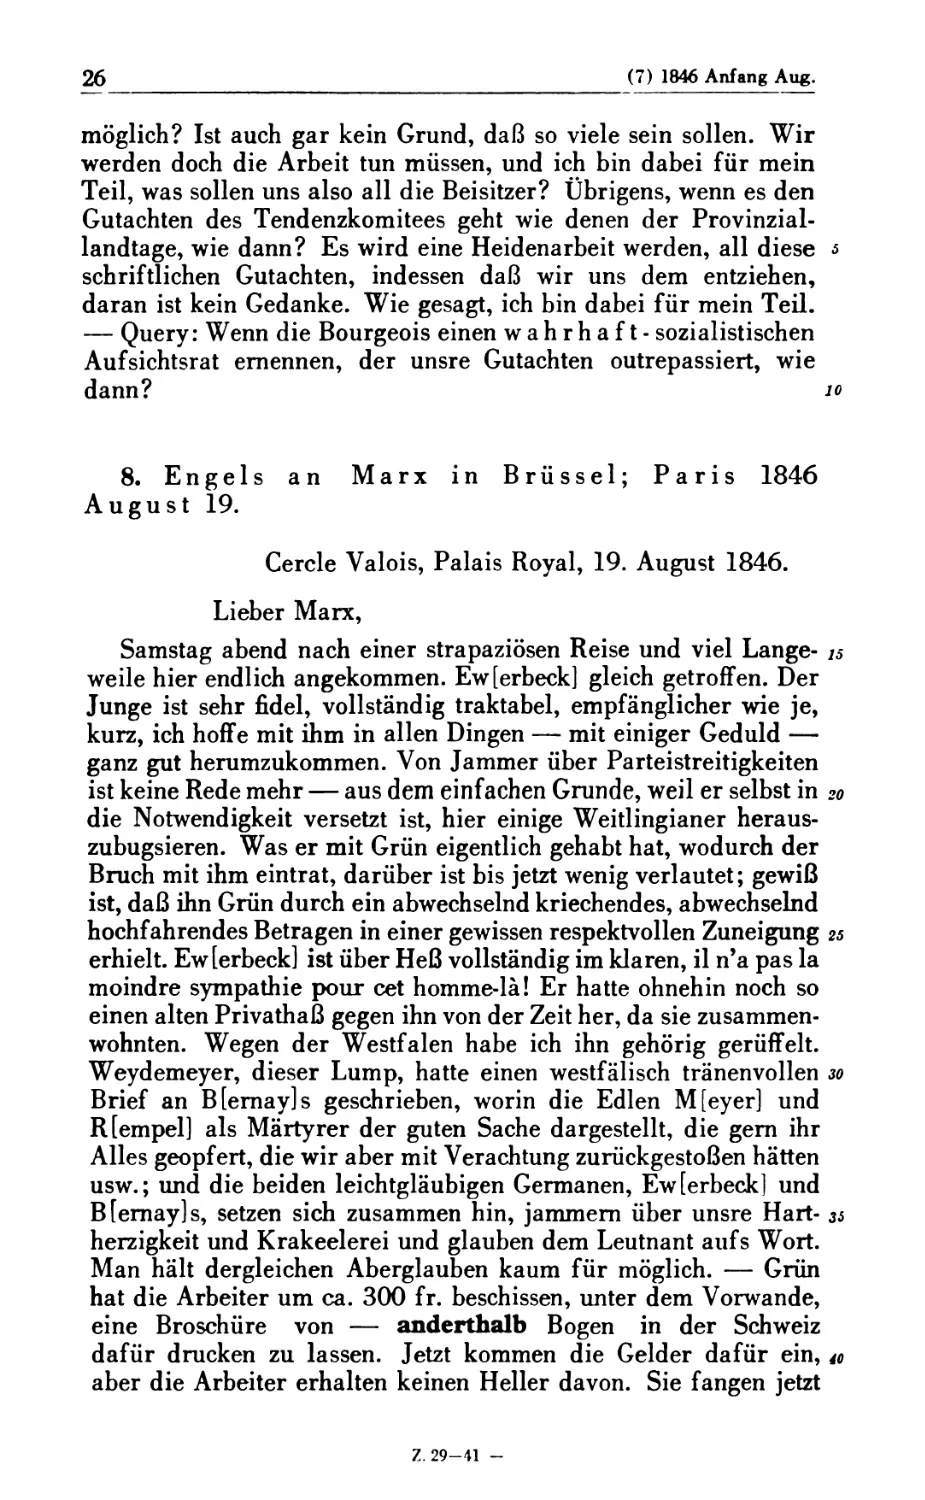 8. Engels an Marx in Brüssel; Paris 1846 August 19